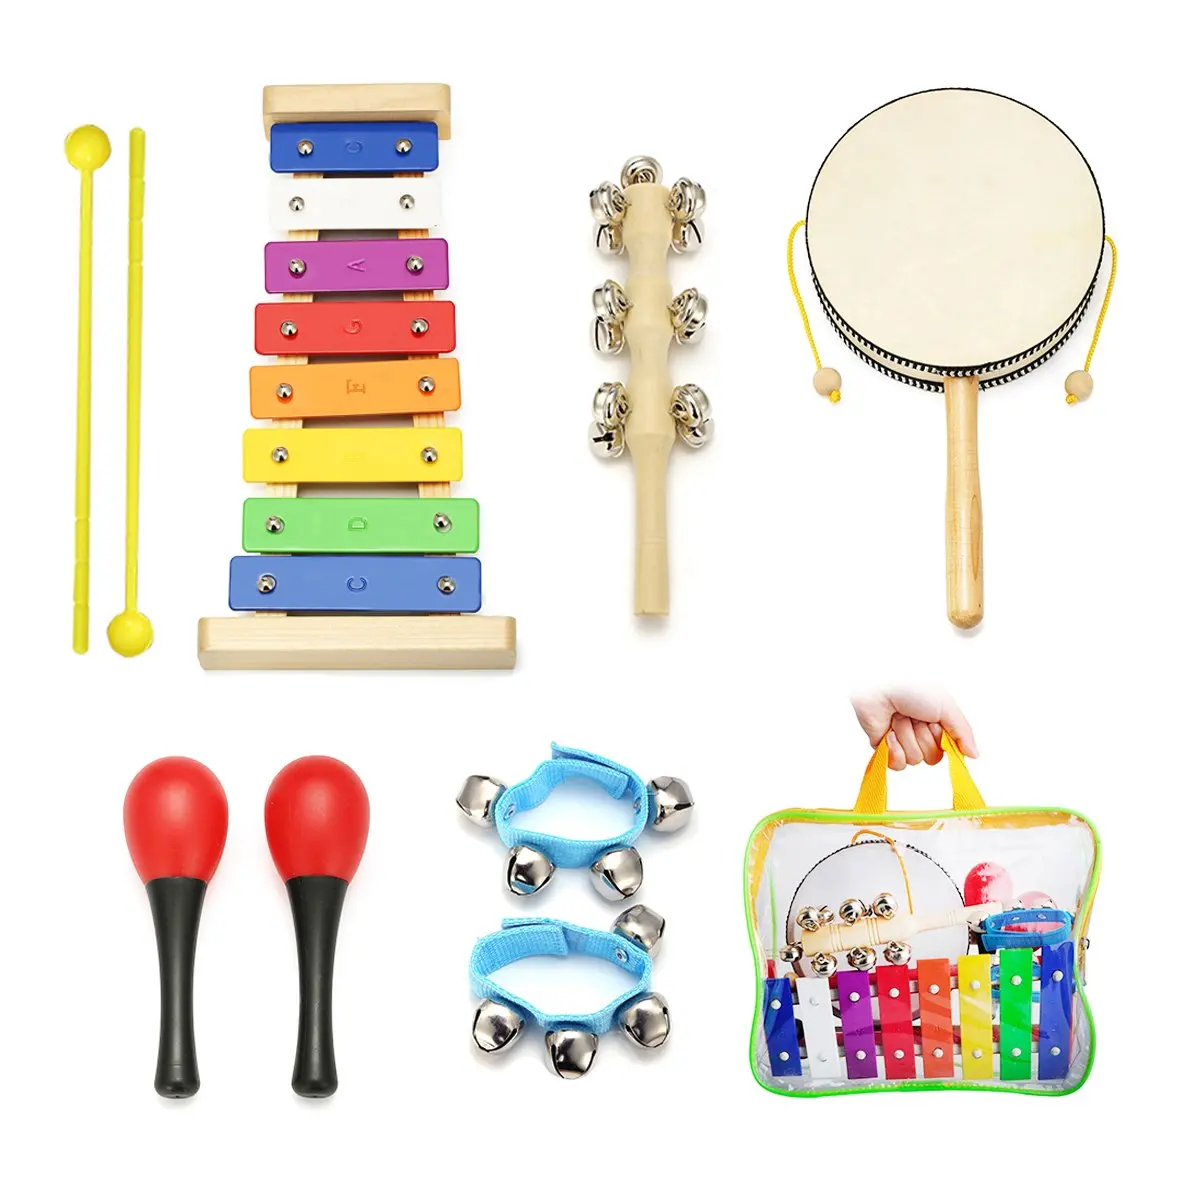 Музыкальный инструмент шар. Музыкальные инструменты для детей. Детские музыкальные инструменты. Игрушечные музыкальные инструменты. Детские музыкальные инструменты для детского сада.